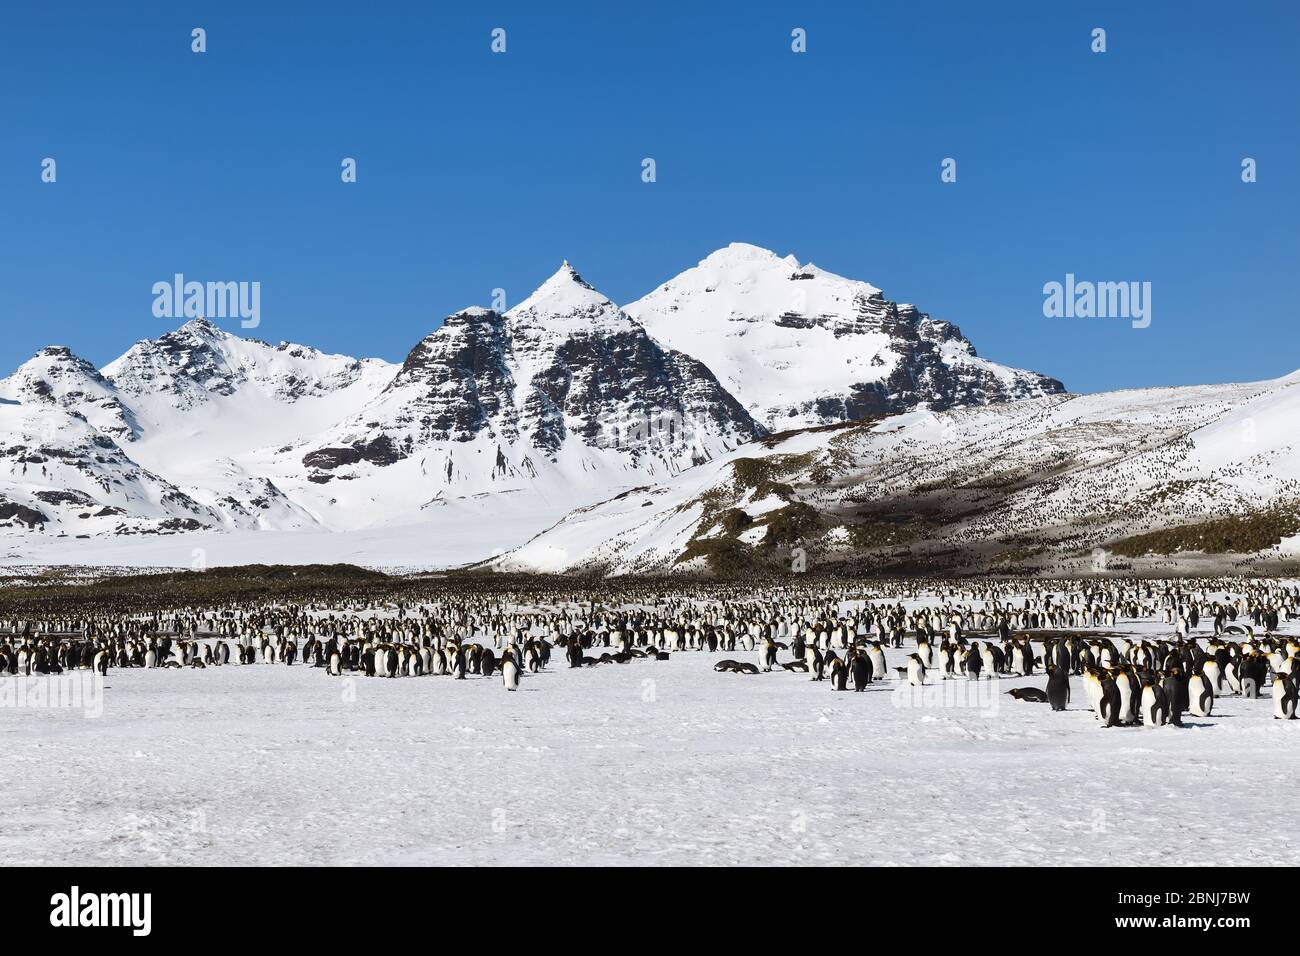 Königspinguin Kolonie (Aptenodytes patagonicus) und schneebedeckte Berge dahinter, Salisbury Plain, Südgeorgien Insel, Antarktis, Polarregionen Stockfoto